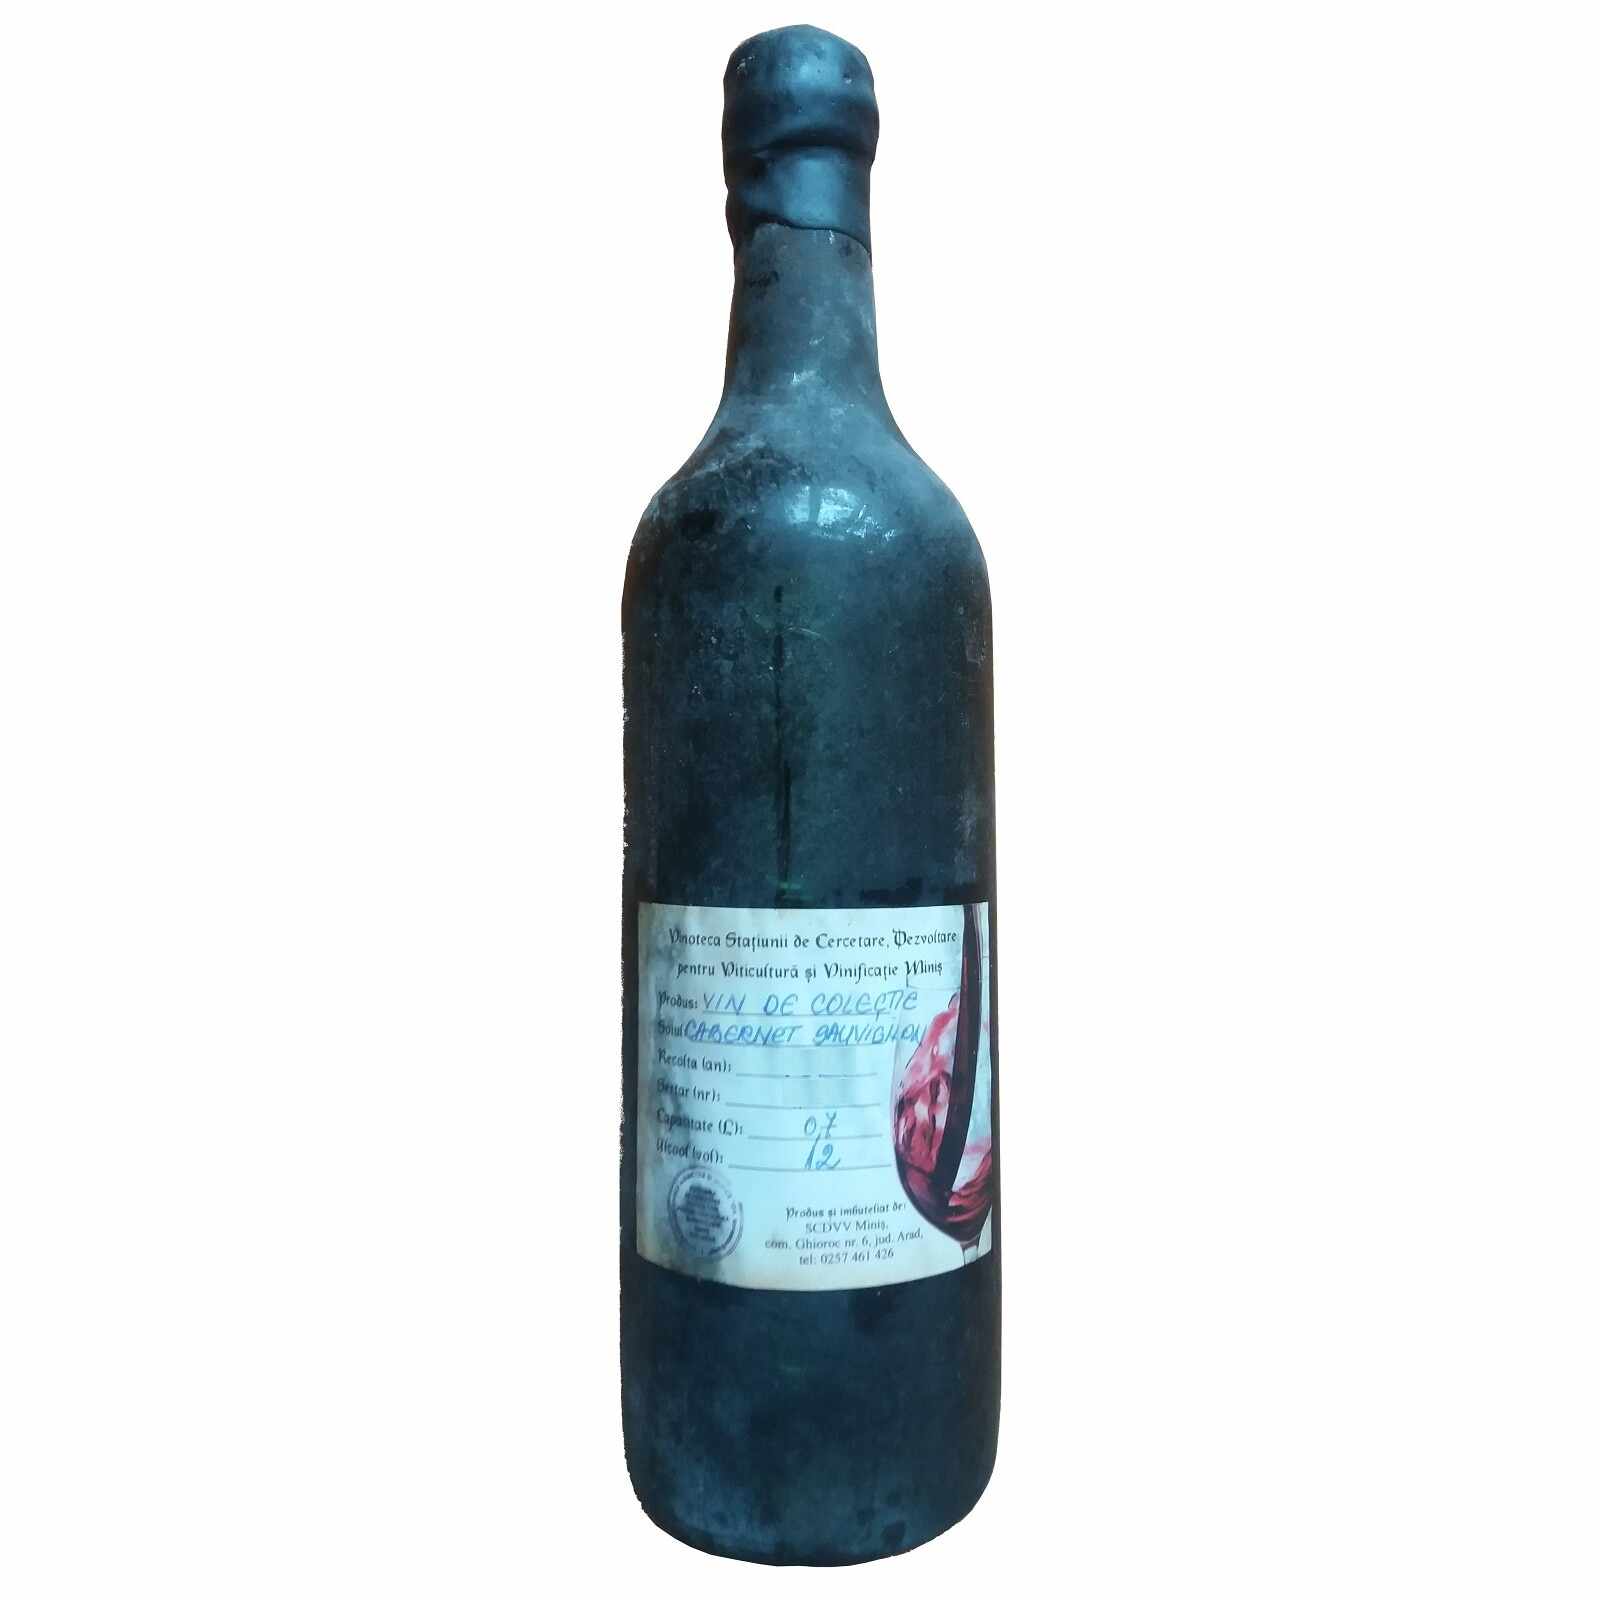 Vin de colectie Minis Cabernet Sauvignon 1977 rosu, in cutie lemn, 0.7L